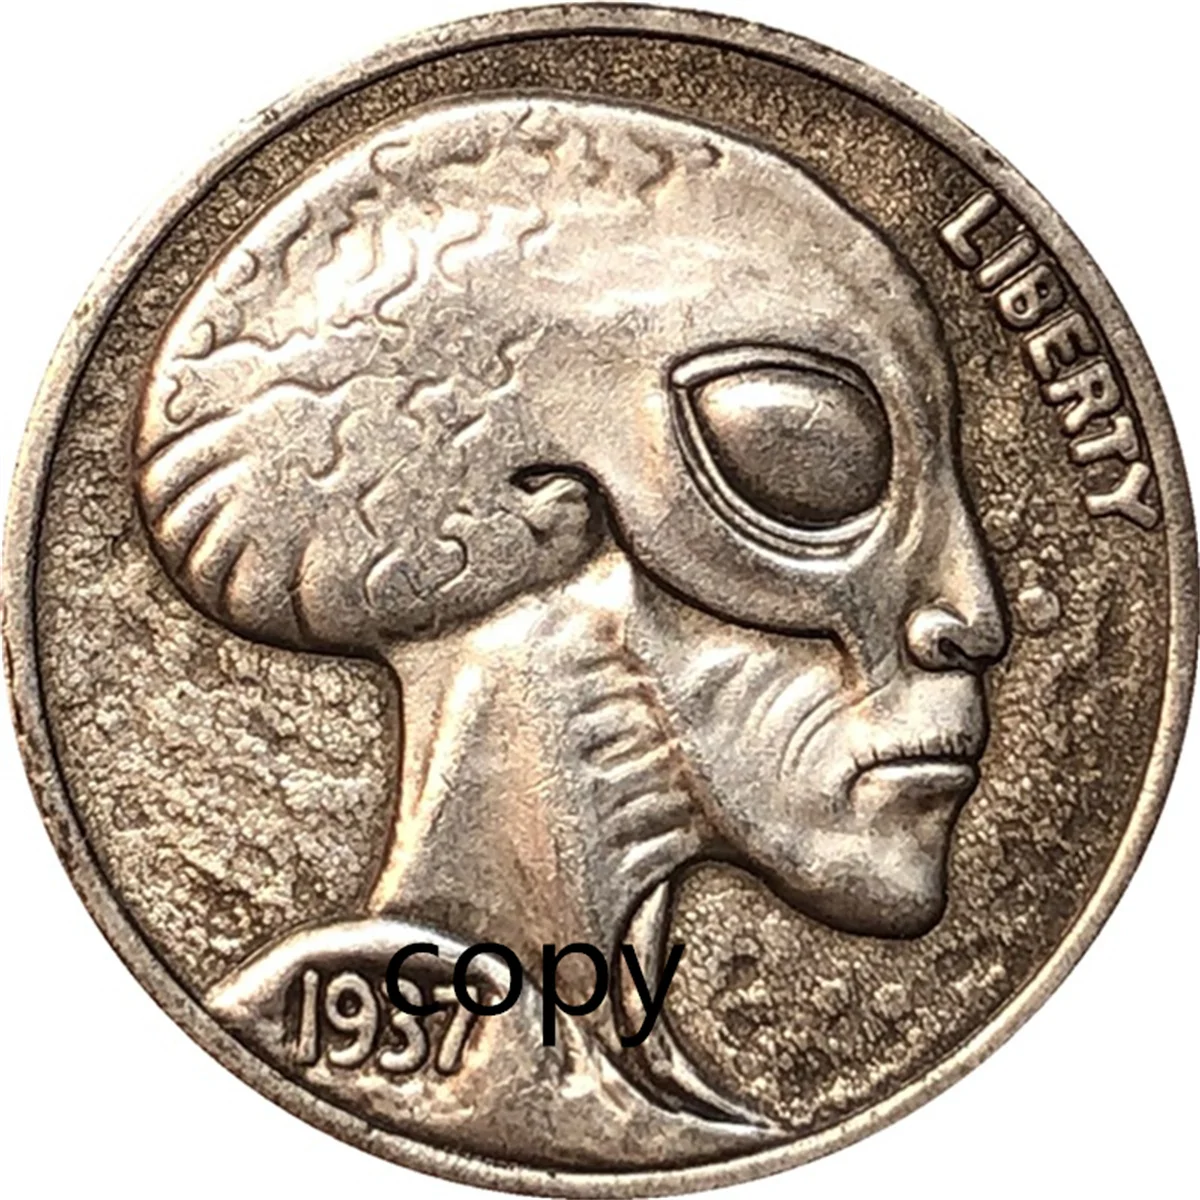 

Пришельцы Хобо монета рейнджер США Монета подарок вызов копия памятная монета-коллекция монет